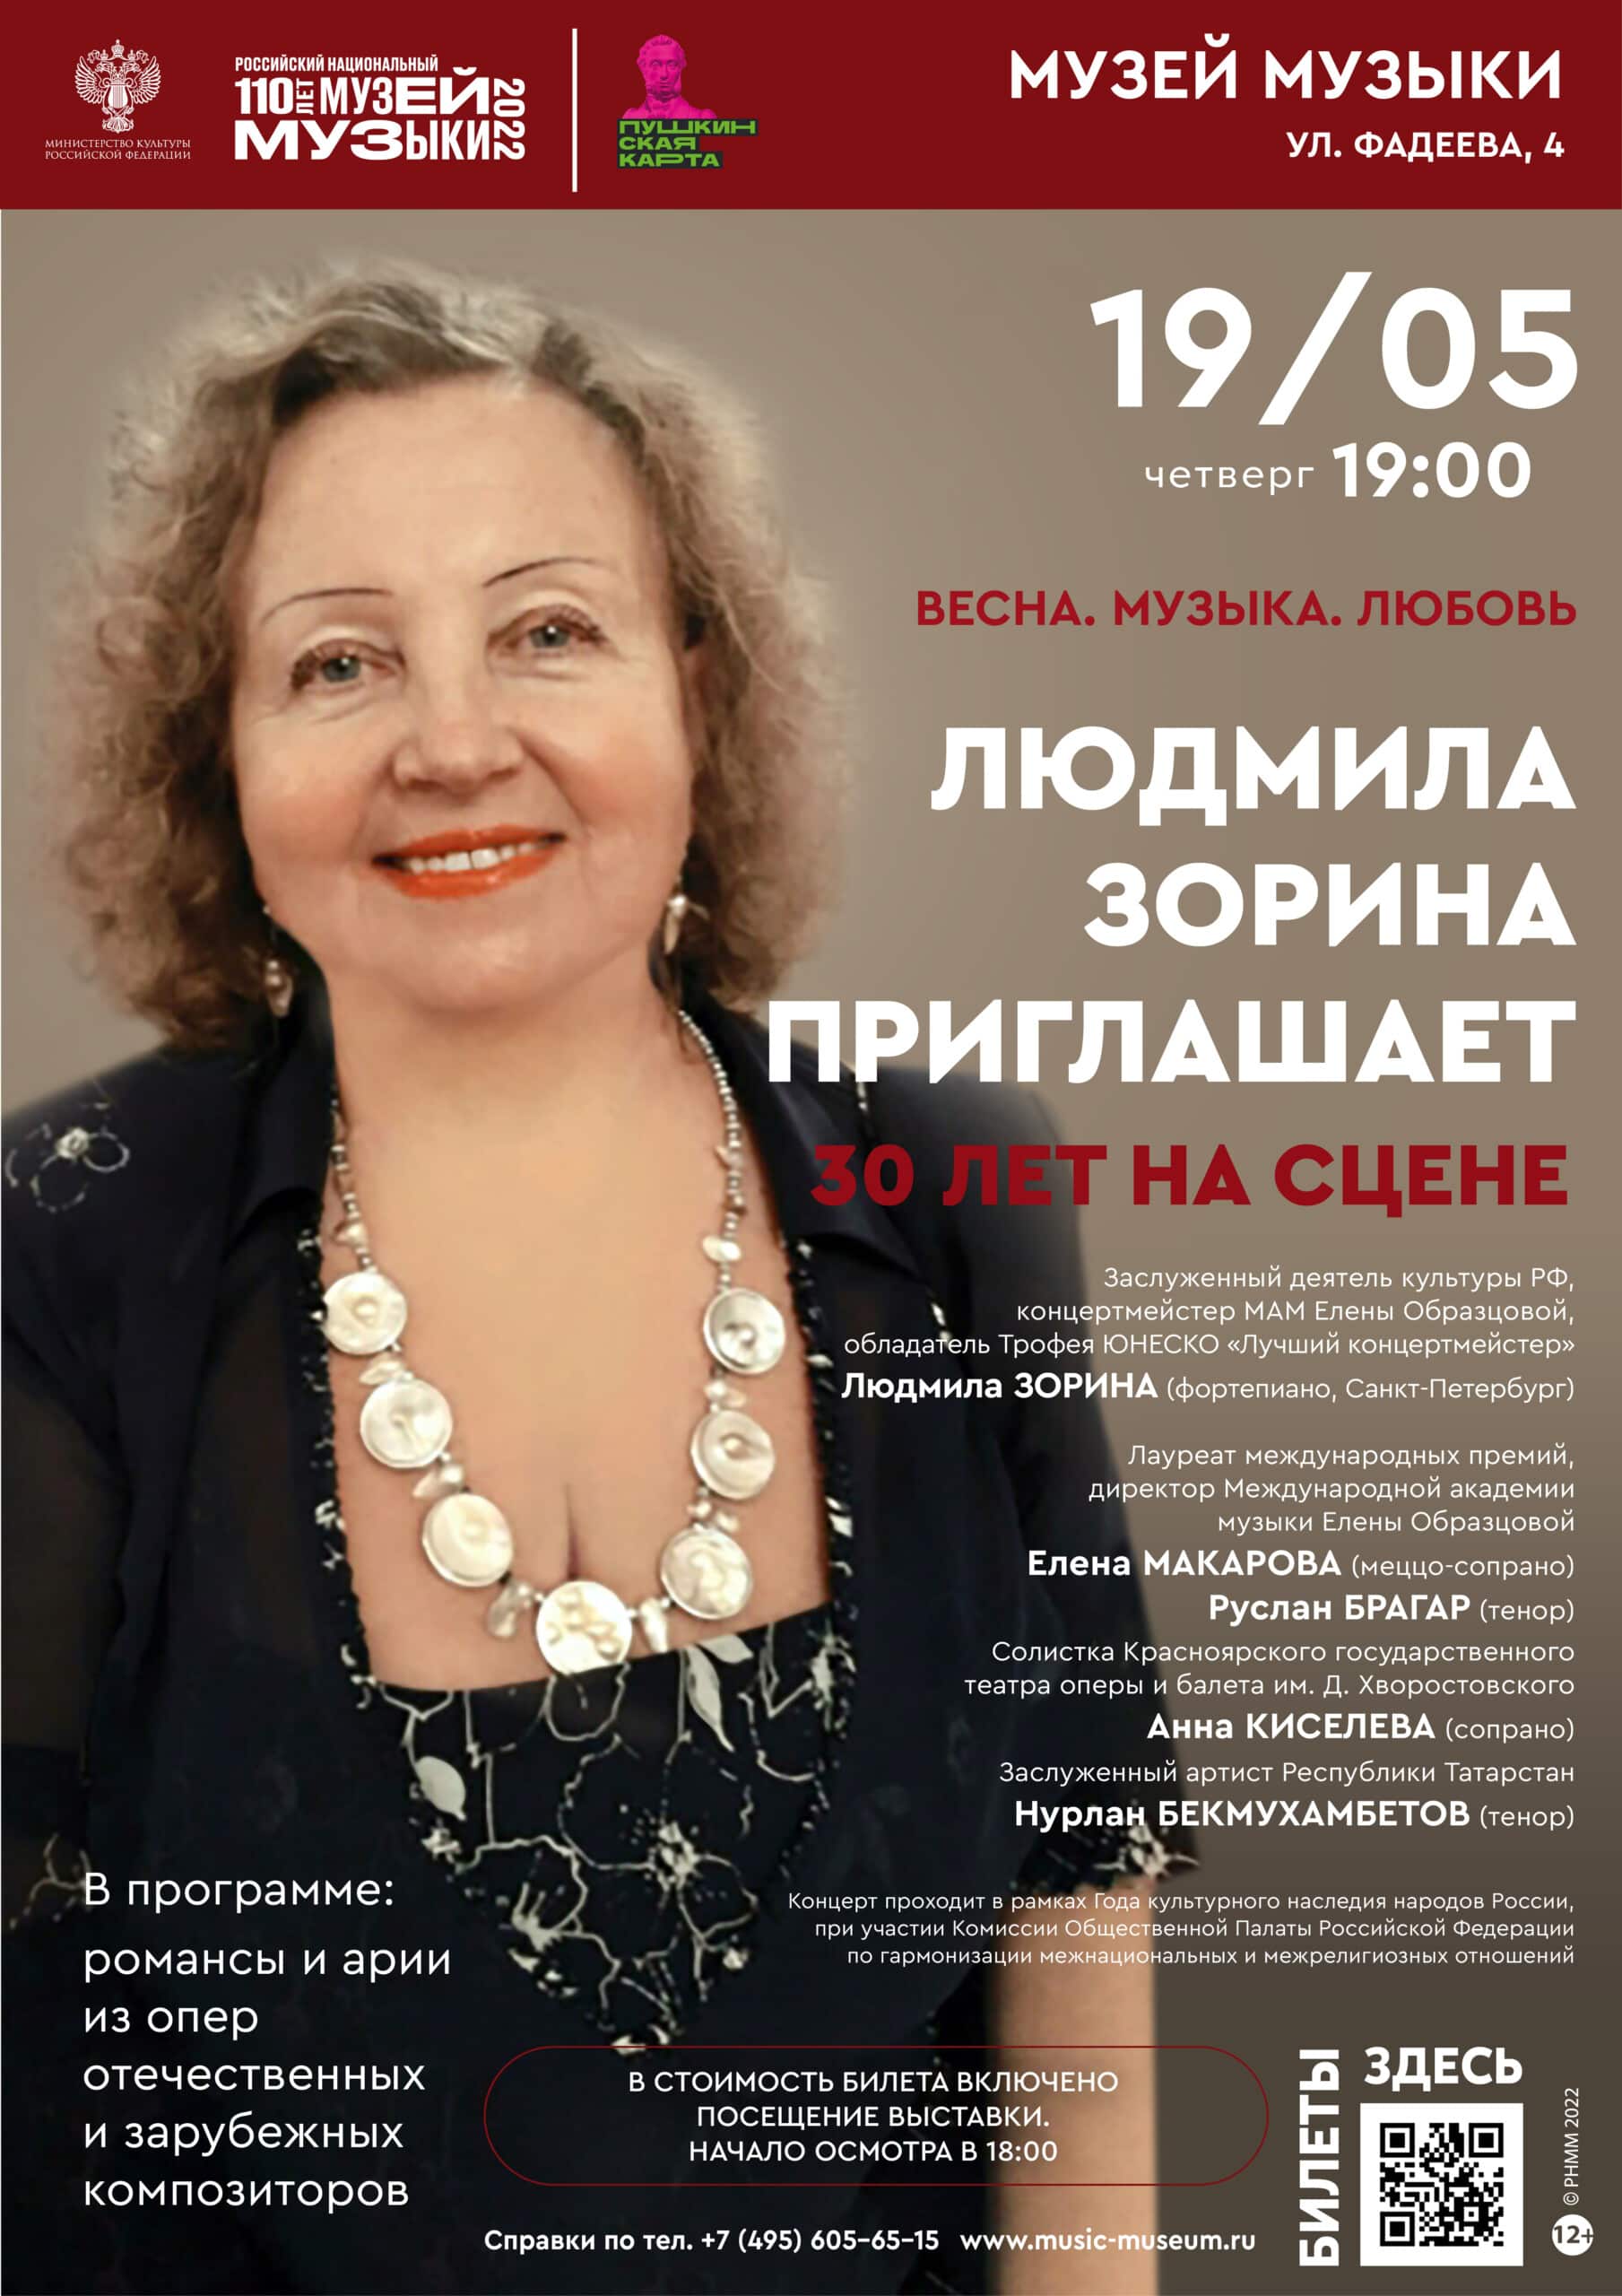 Концерт «Весна. Музыка. Любовь» пройдет в Российском национальном музее музыки